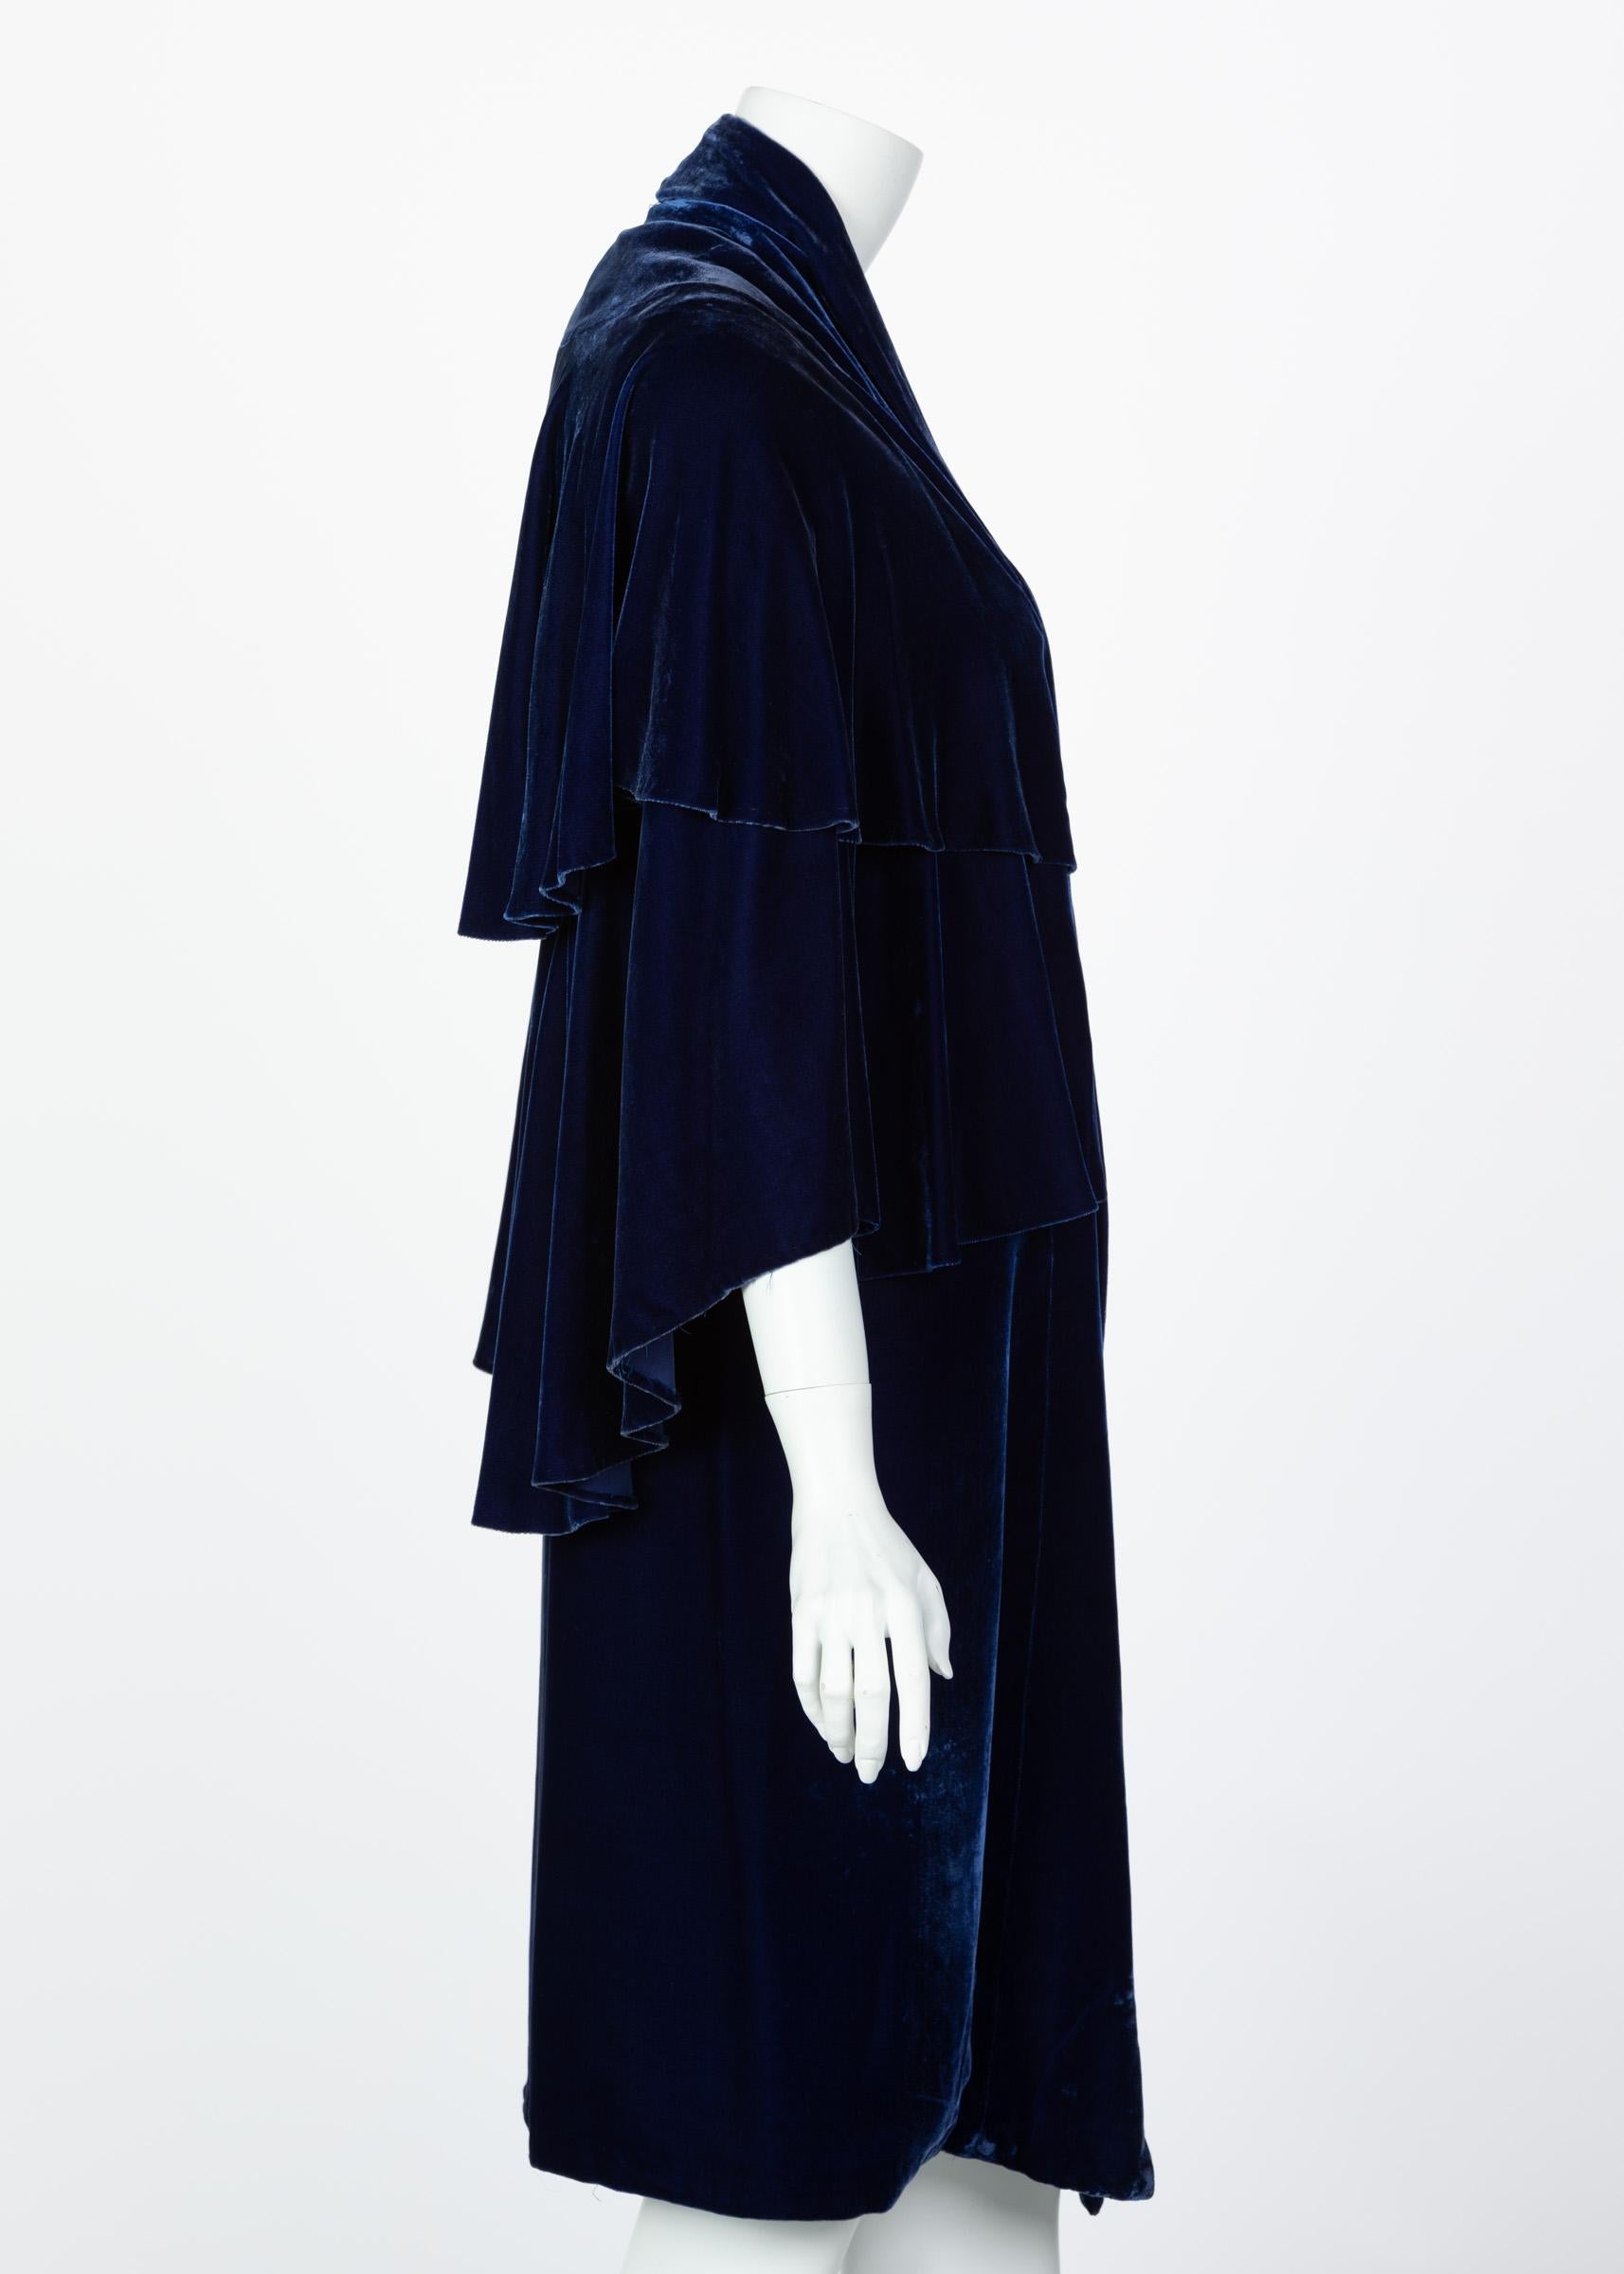 Women's I Magnin & Co. Blue Silk velvet Evening Cape Coat, 1930s For Sale